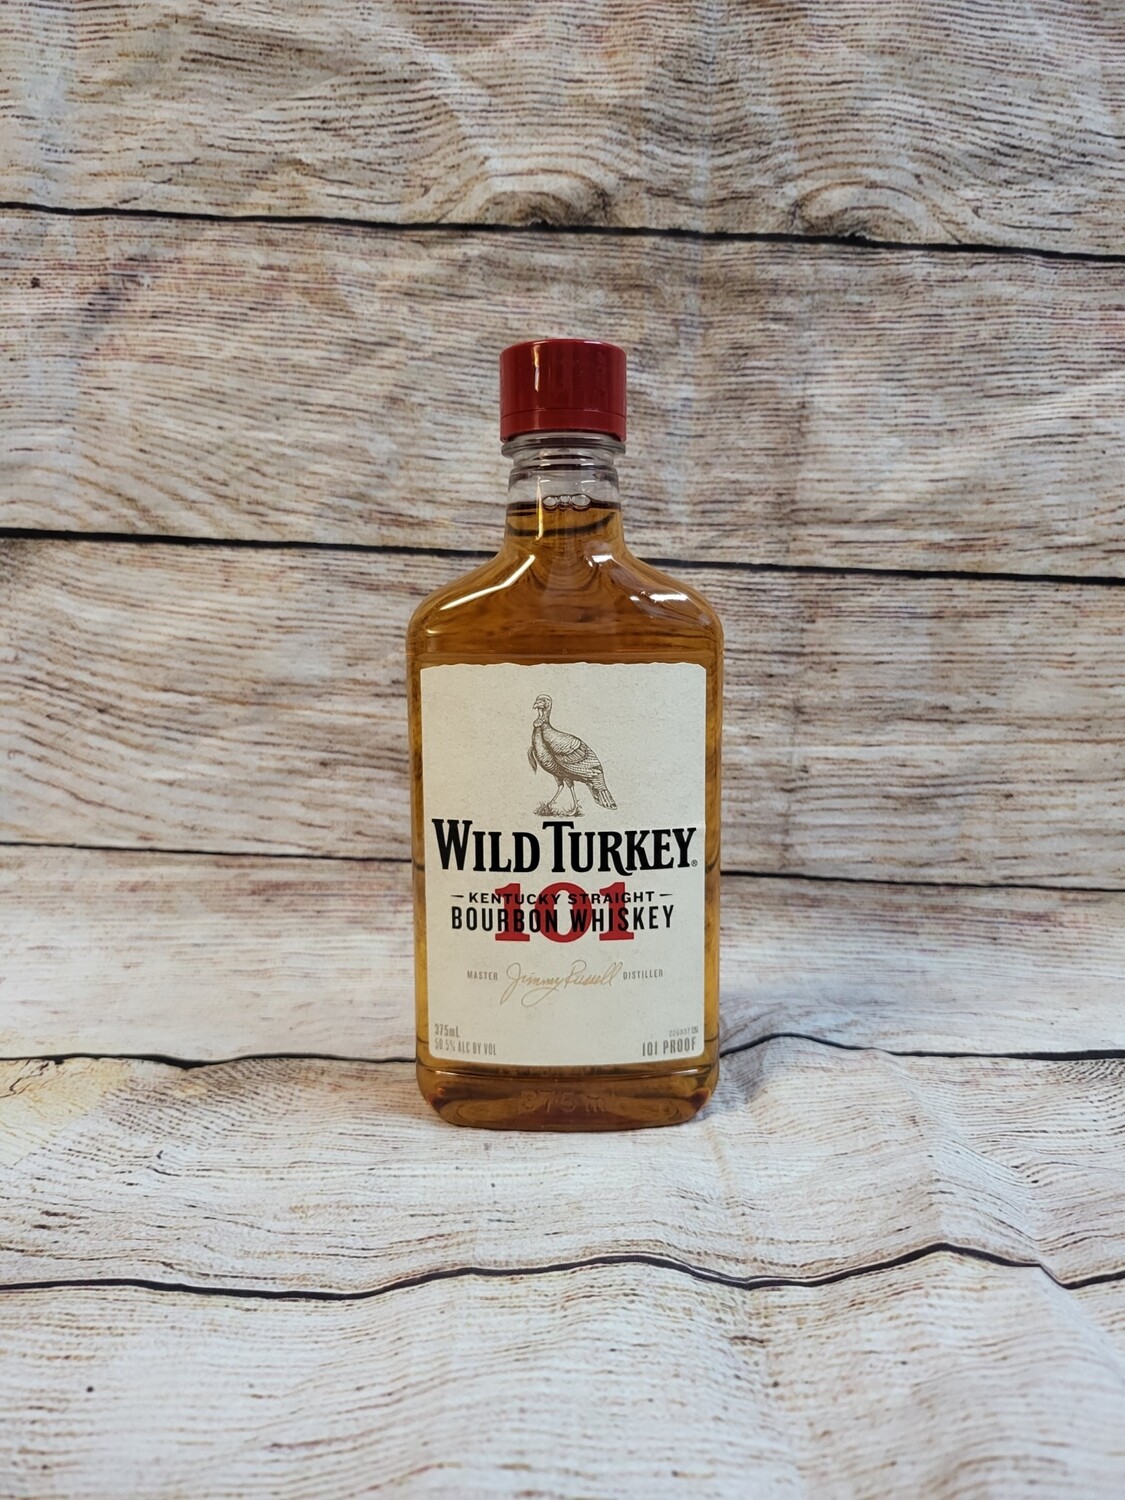 Wild Turkey 101 Bourbon 375ml